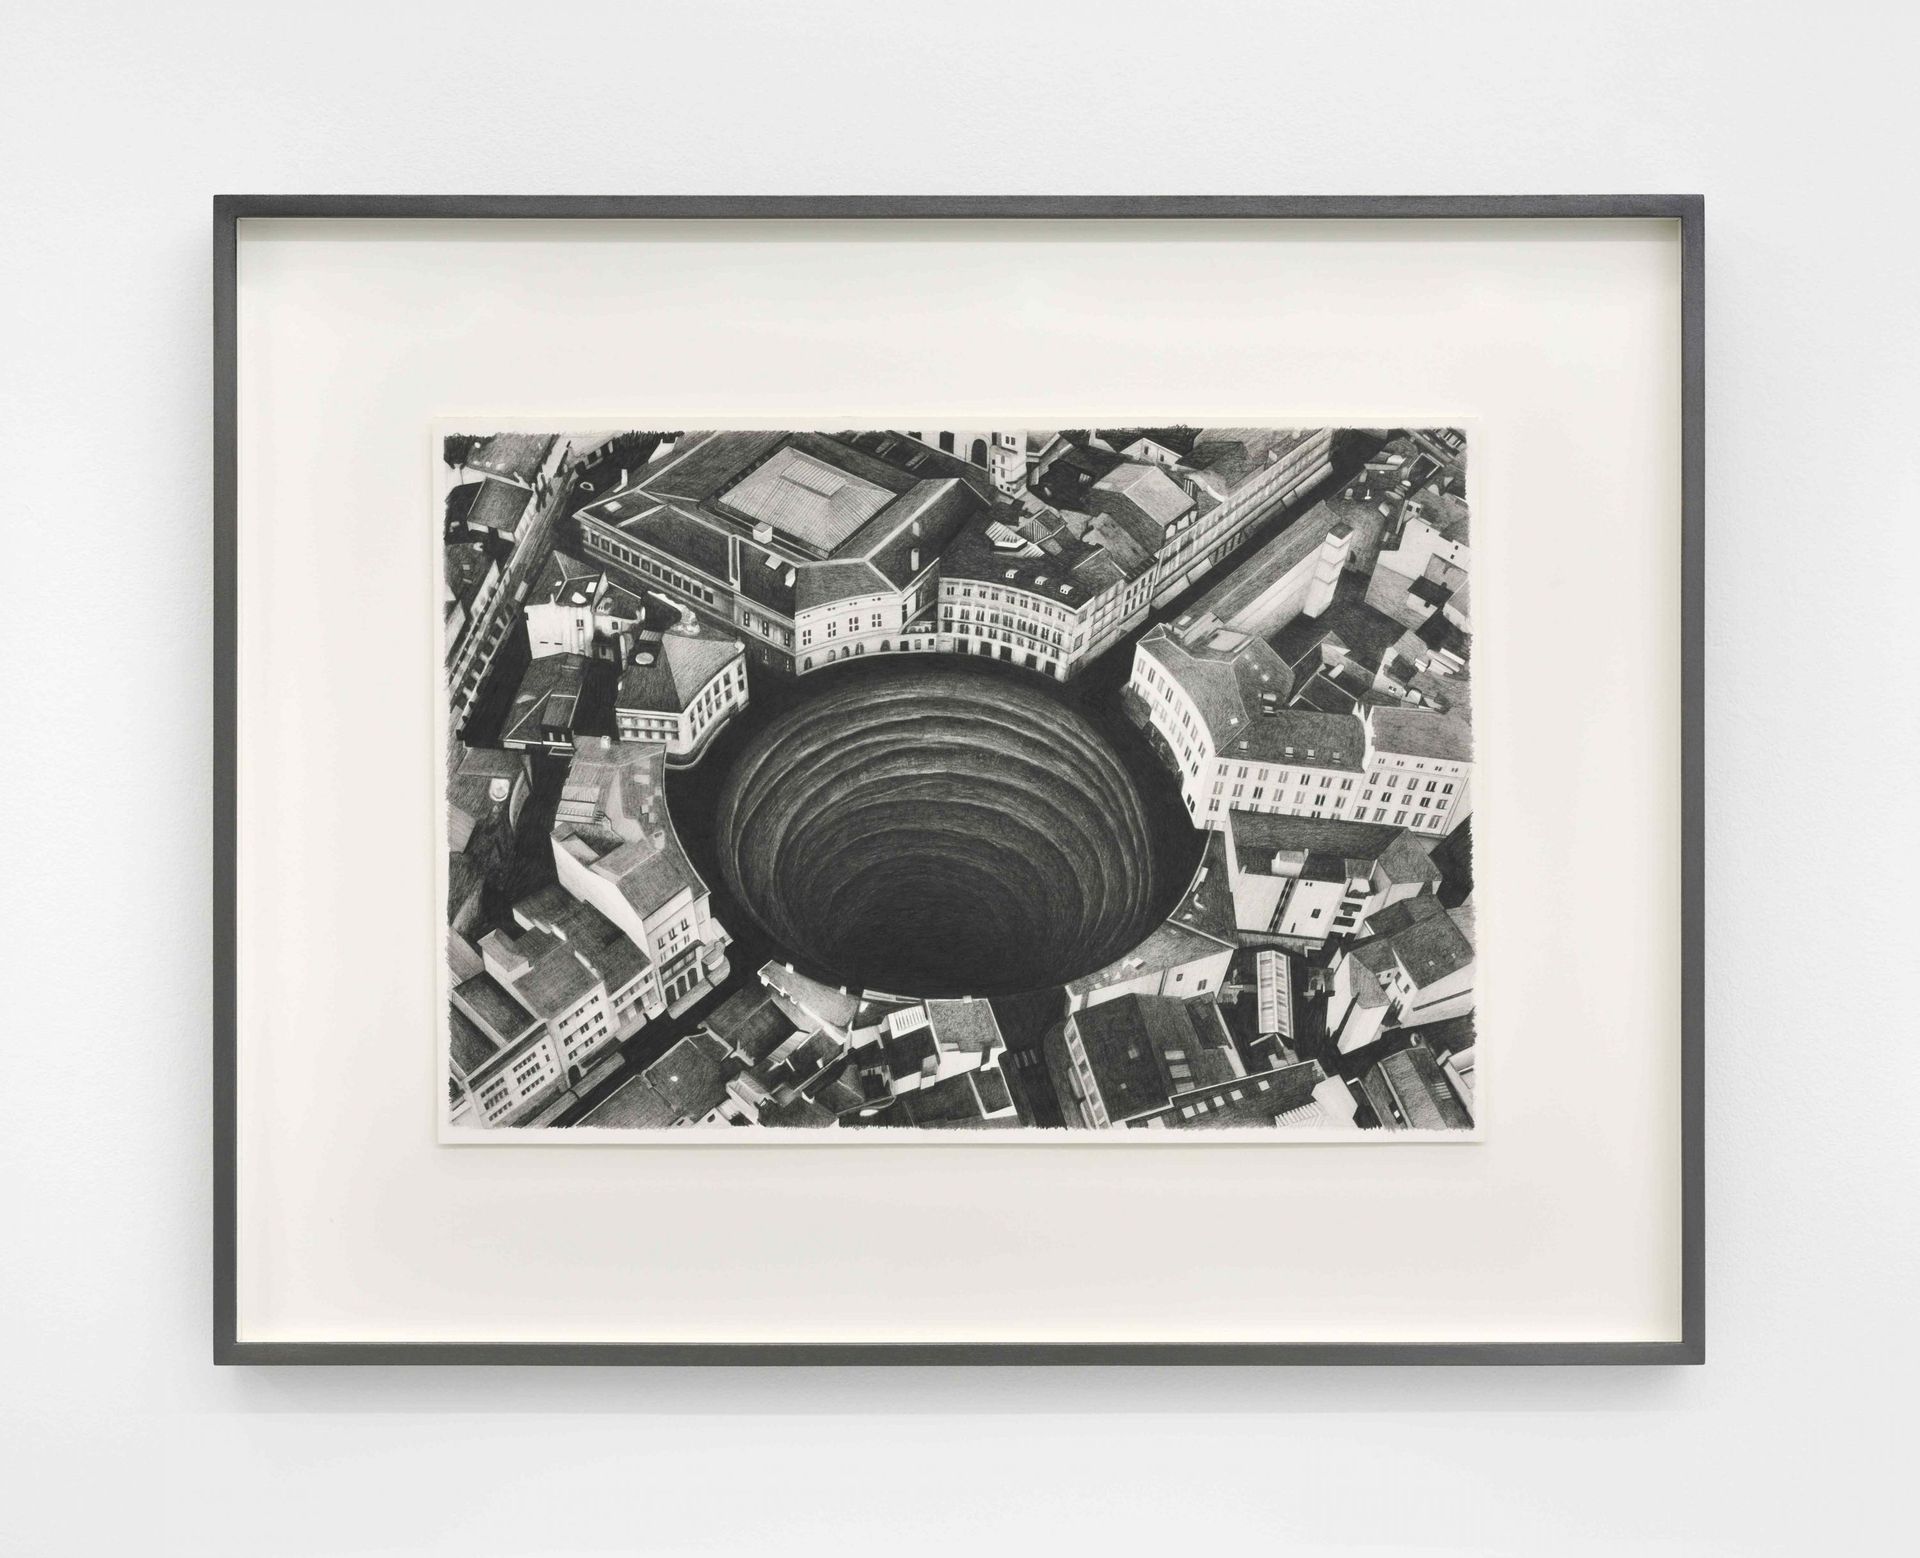 Hole, 2019, dessin graphite sur papier Arches, 54 x 68,5 cm, encadrement bois, verre anti-UV anti-reflet